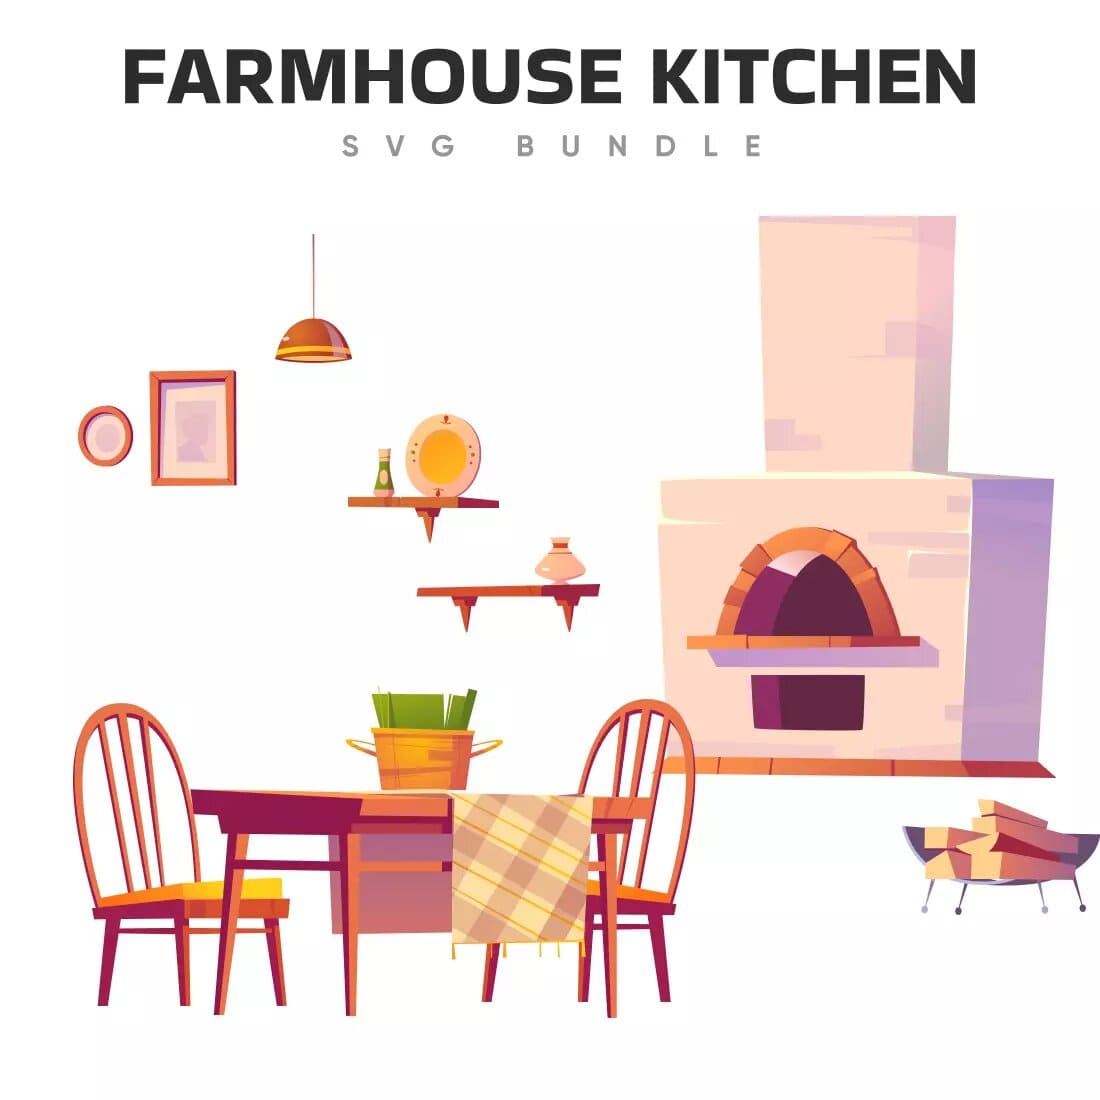 Farmhouse Kitchen SVG Bundle Preview 2.